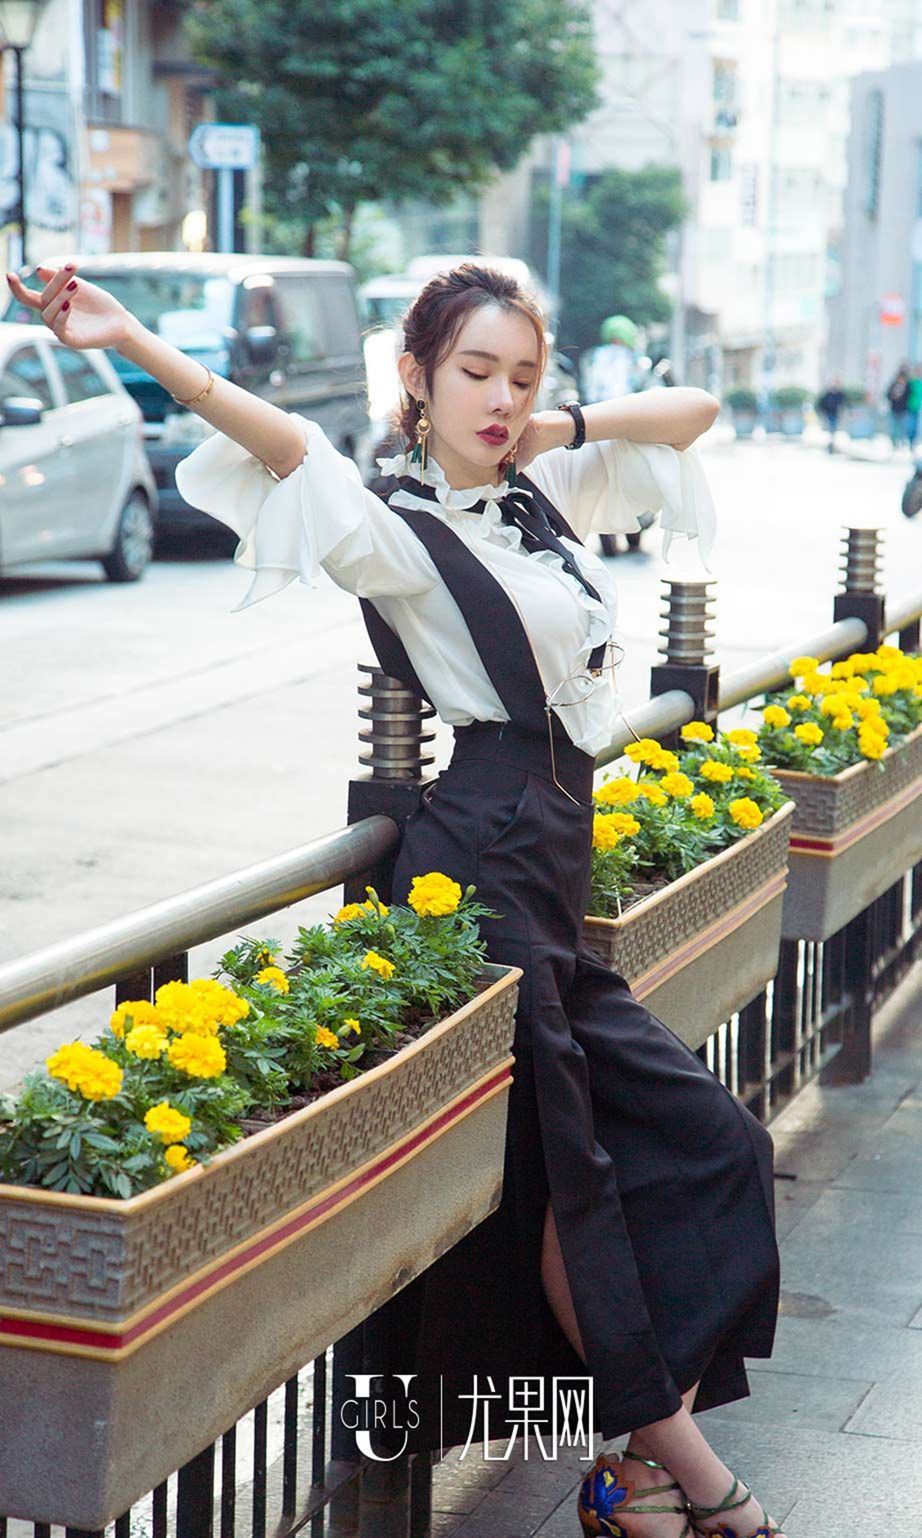 尤果网美女模特萌琪琪高冷时尚街拍写真